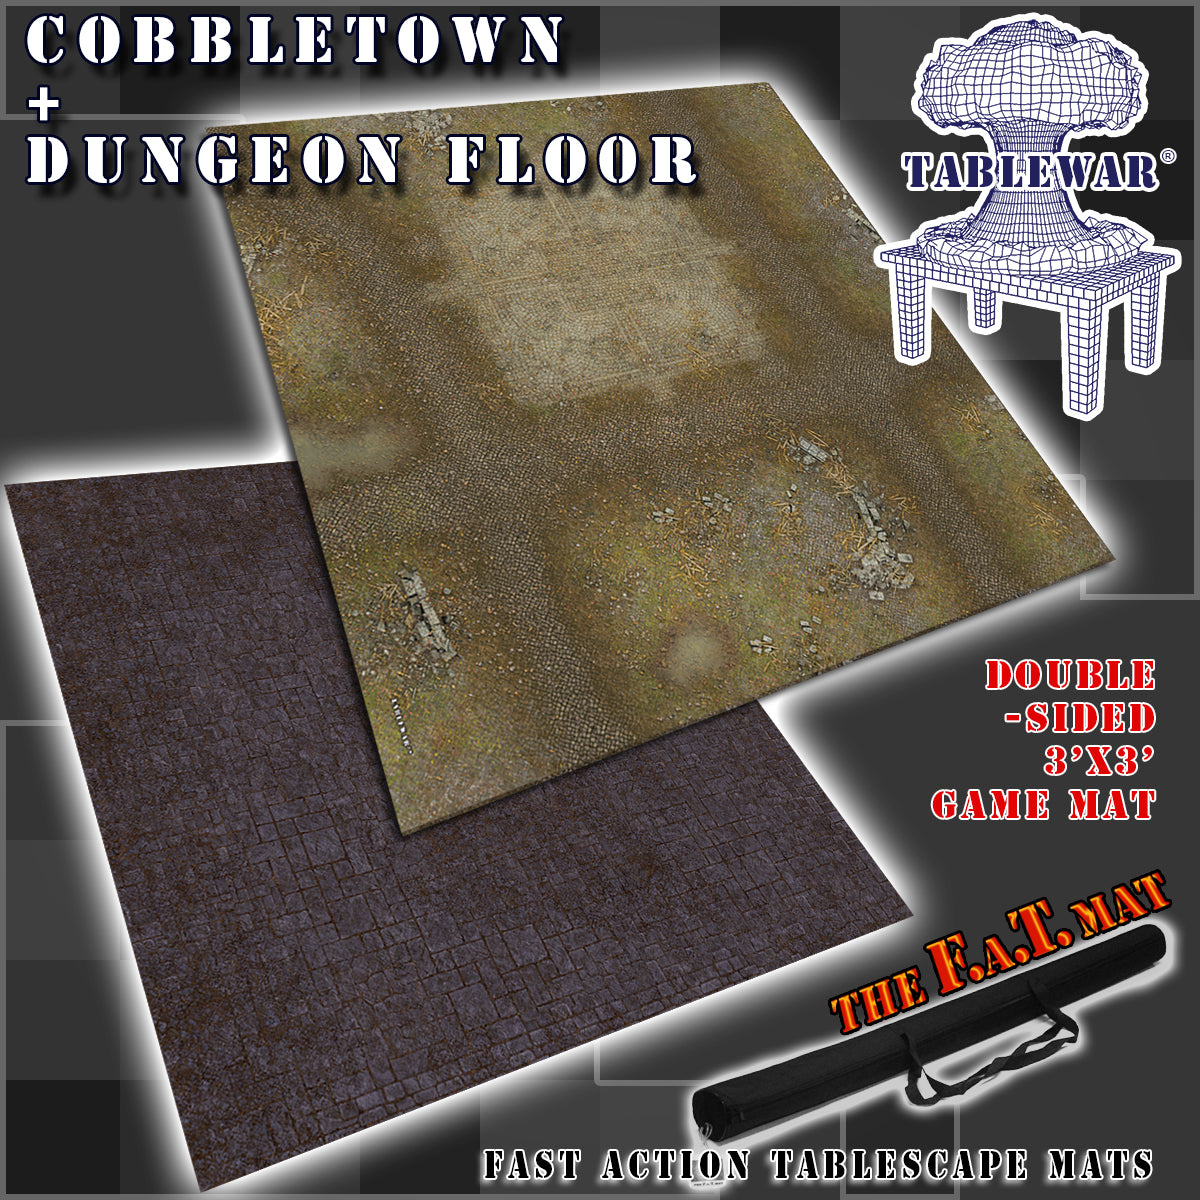 Pat kompas Downtown 3x3' Dbl Sided 'Cobbletown + Dungeon Floor' F.A.T. Mat Gaming Mat –  TABLEWAR®